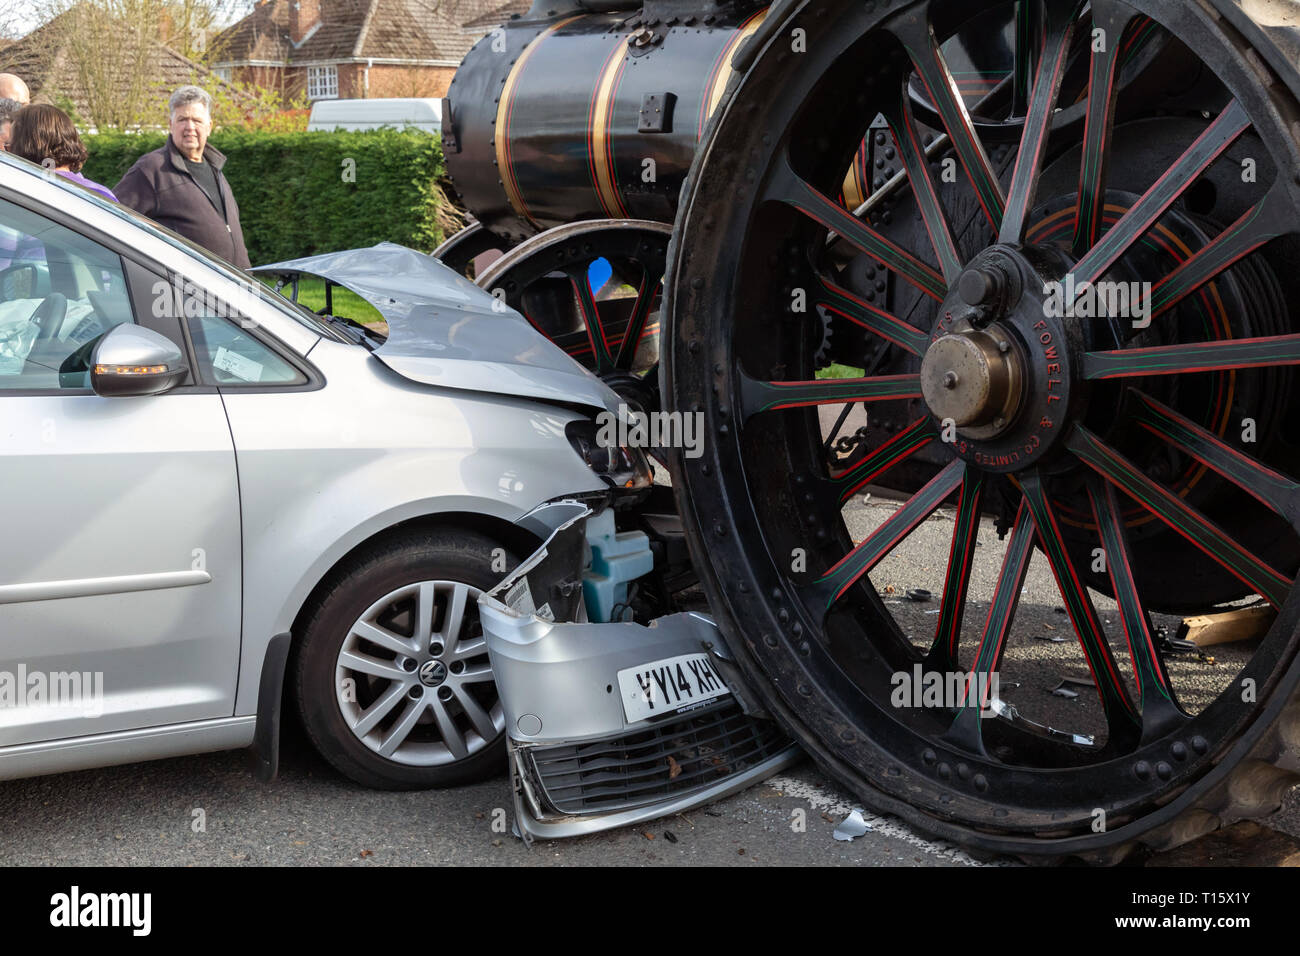 Great Barton, Suffolk, UK. 23 mars 2019. Accident de la route impliquant un moteur de traction à vapeur et une Volkswagen Sharan/Touran en grand Barton, Suffolk, UK 23/03/19 à environ 14.30pm Crédit : David J. Green/Alamy Live News Banque D'Images